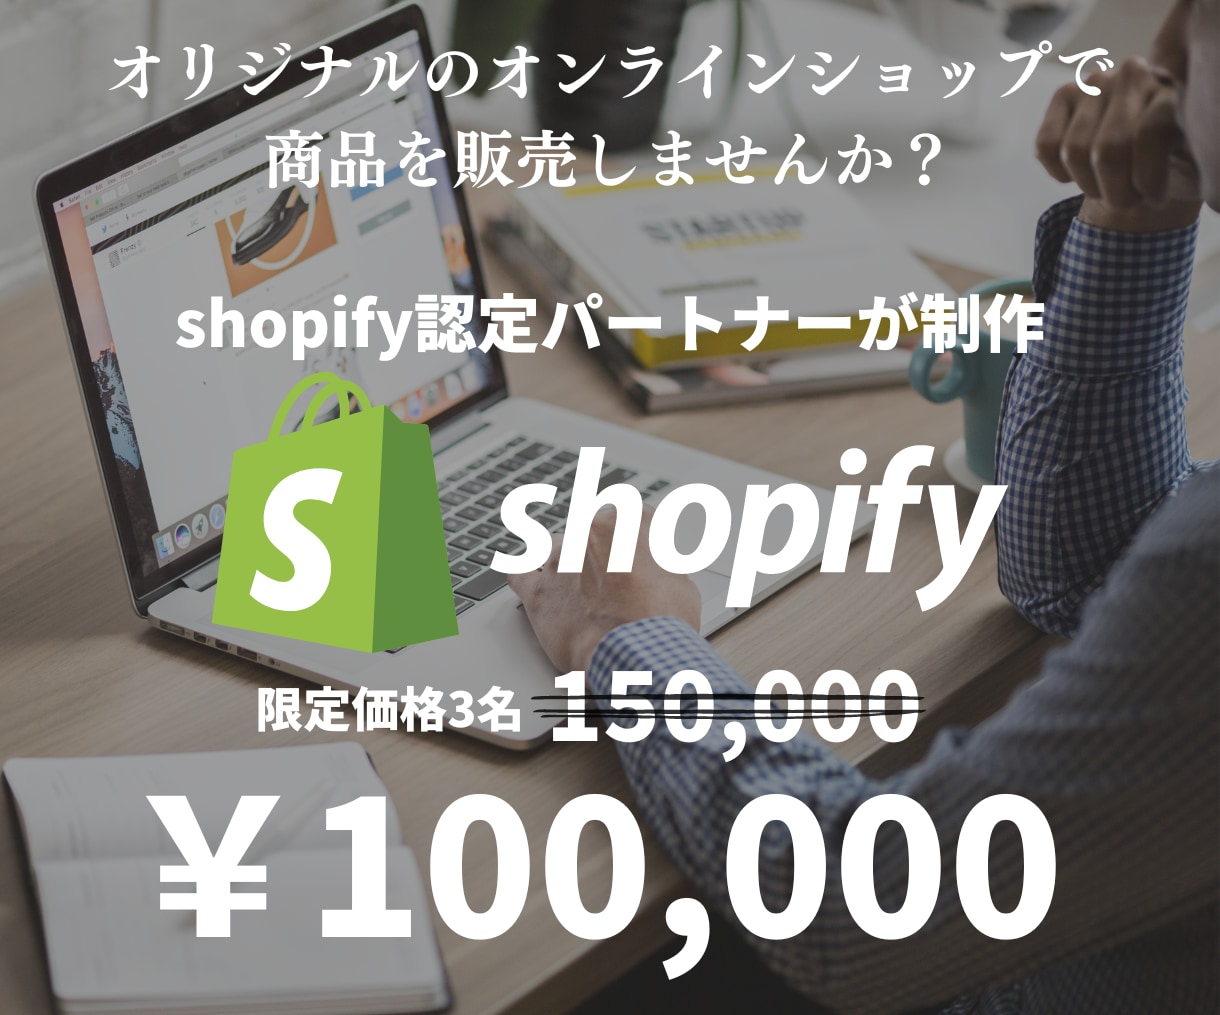 ShopifyでECサイトを作成致します Shopify検討の方、実績あるパートナーがサポートします！ イメージ1